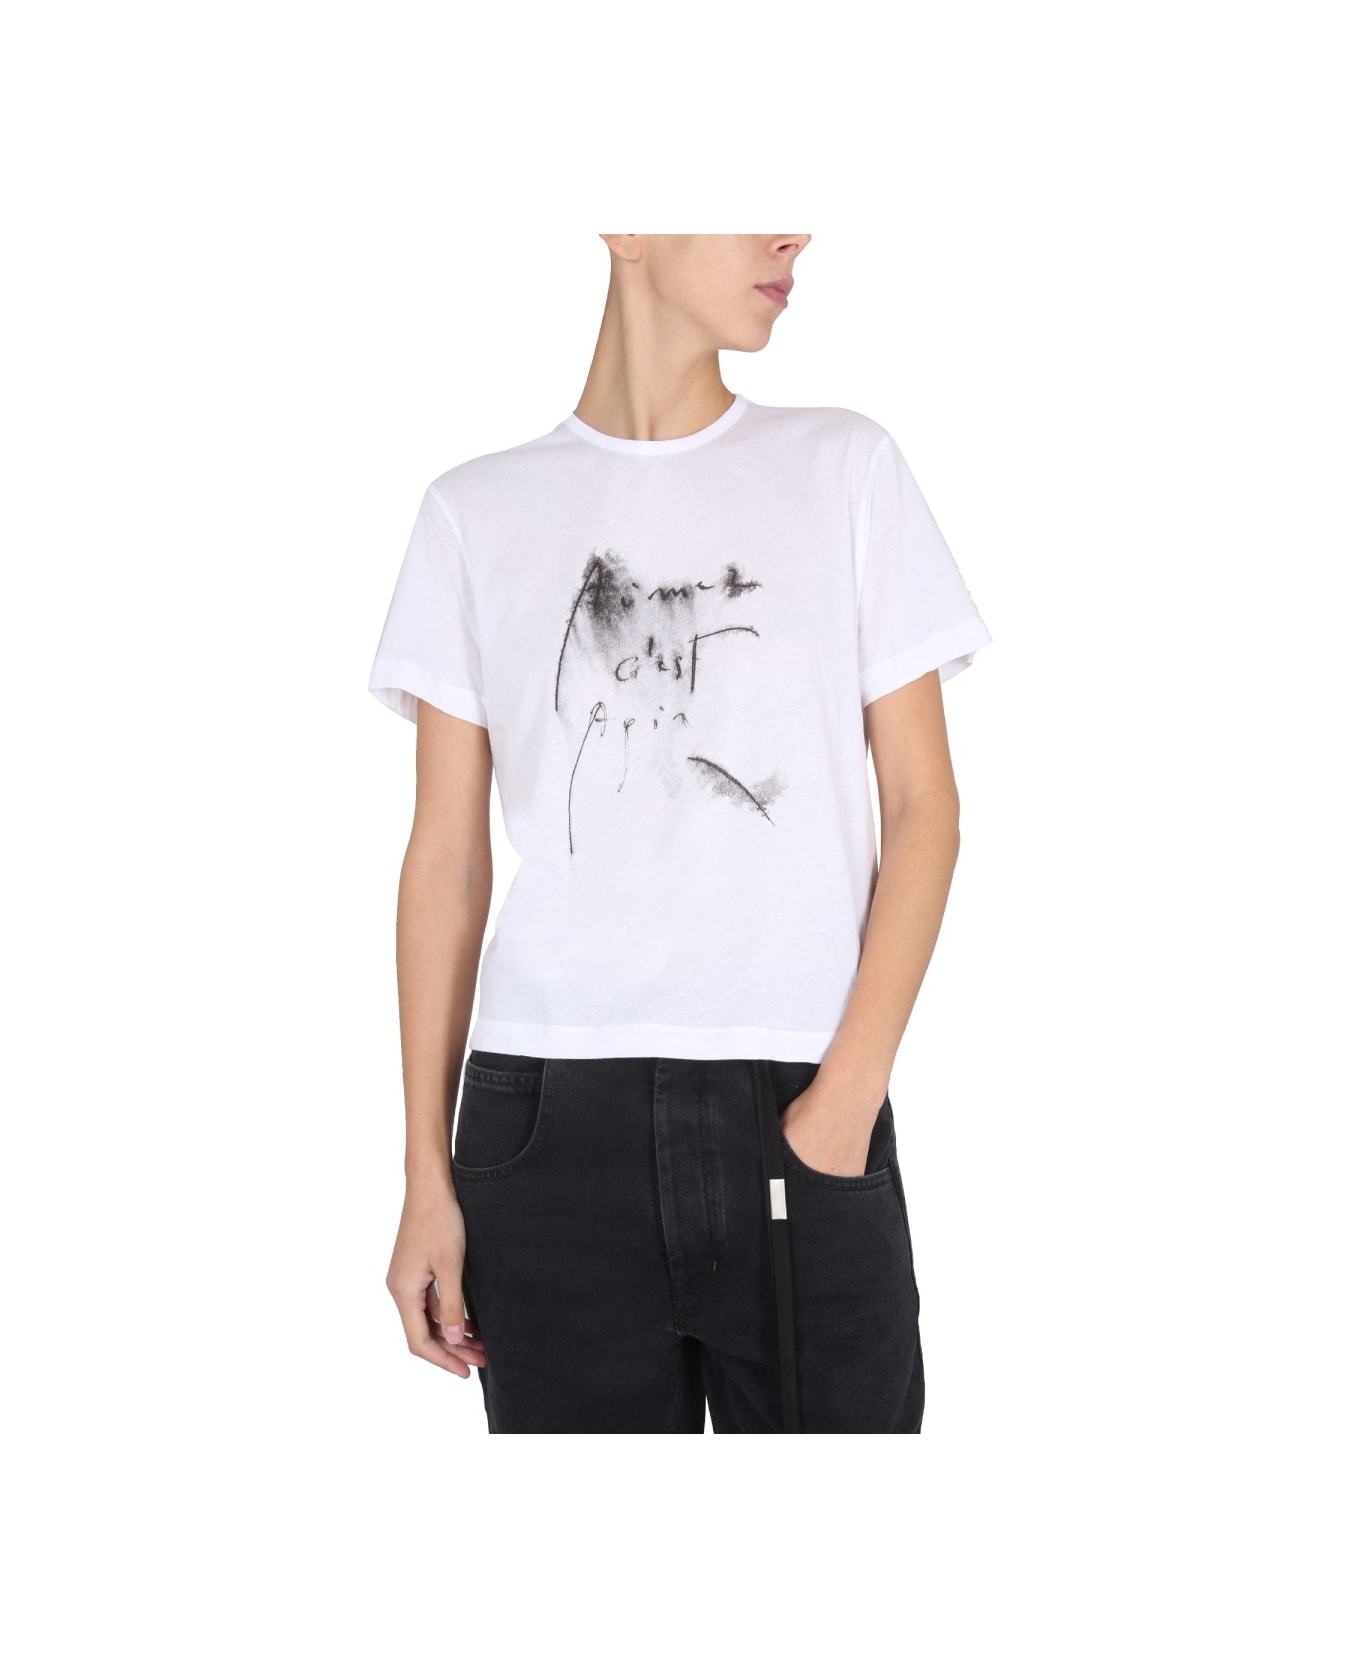 Ann Demeulemeester T-shirt "sandra" - WHITE